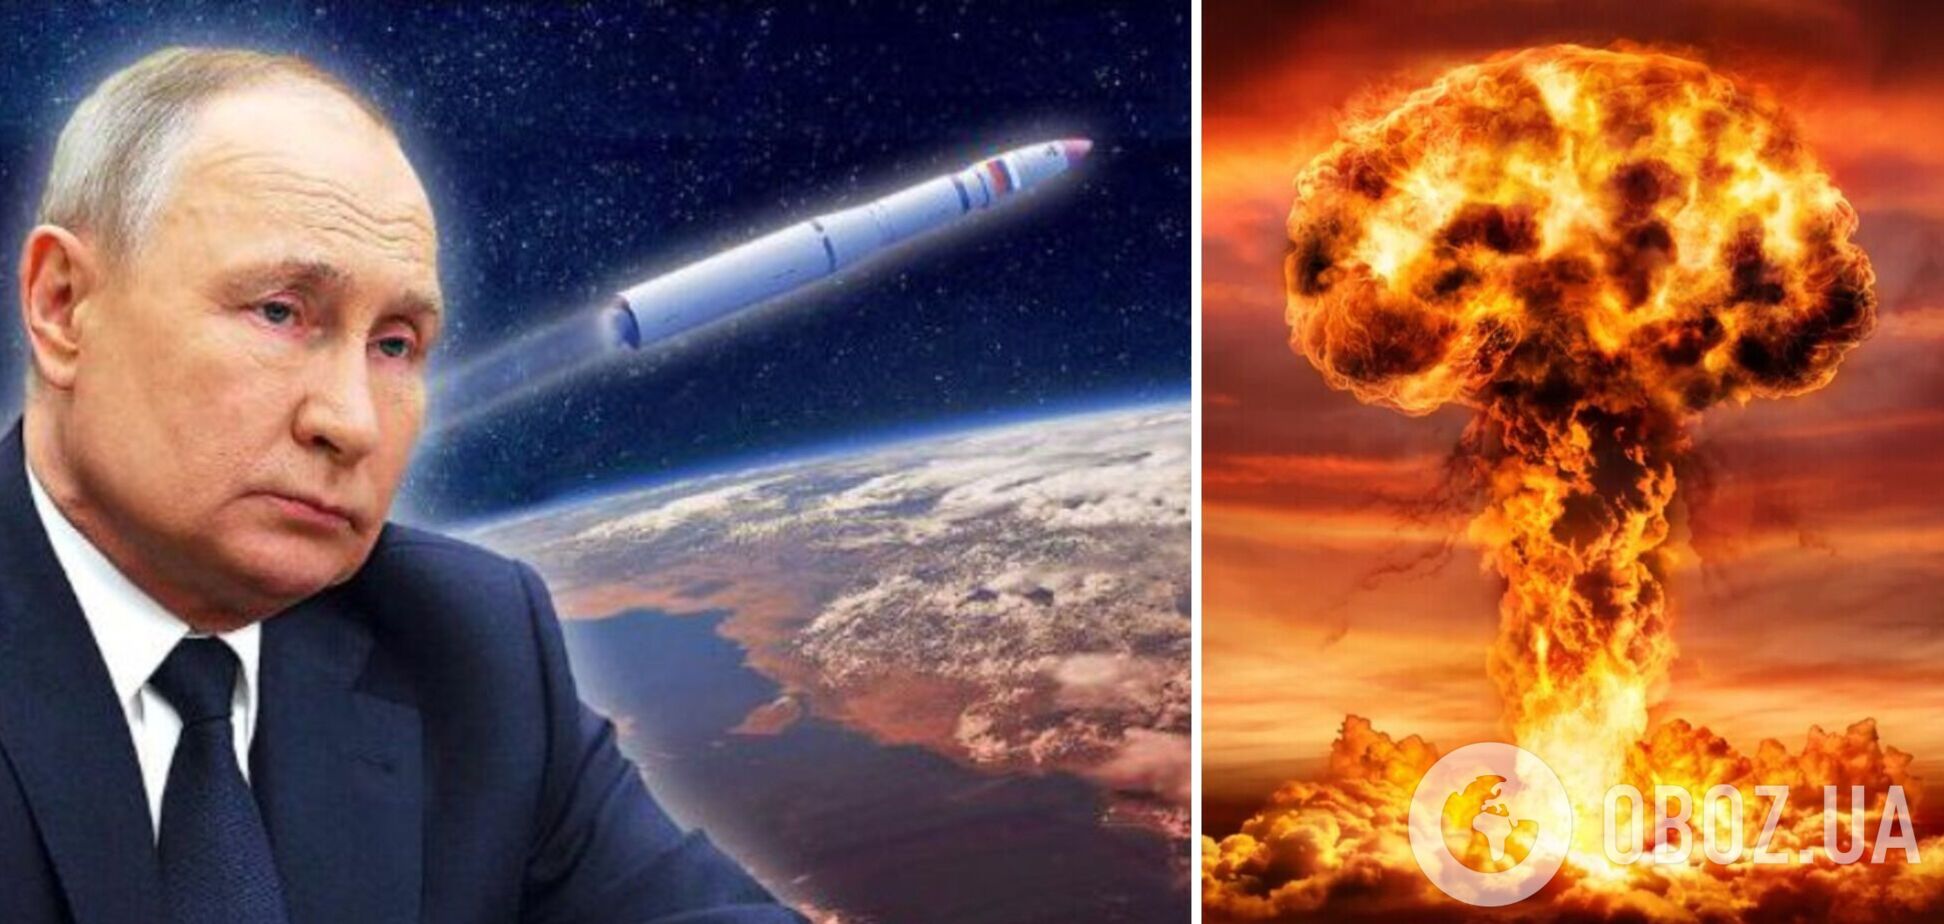 Российское ядерное оружие в космосе – очередной блеф Путина для шантажа 'коллективного Запада'